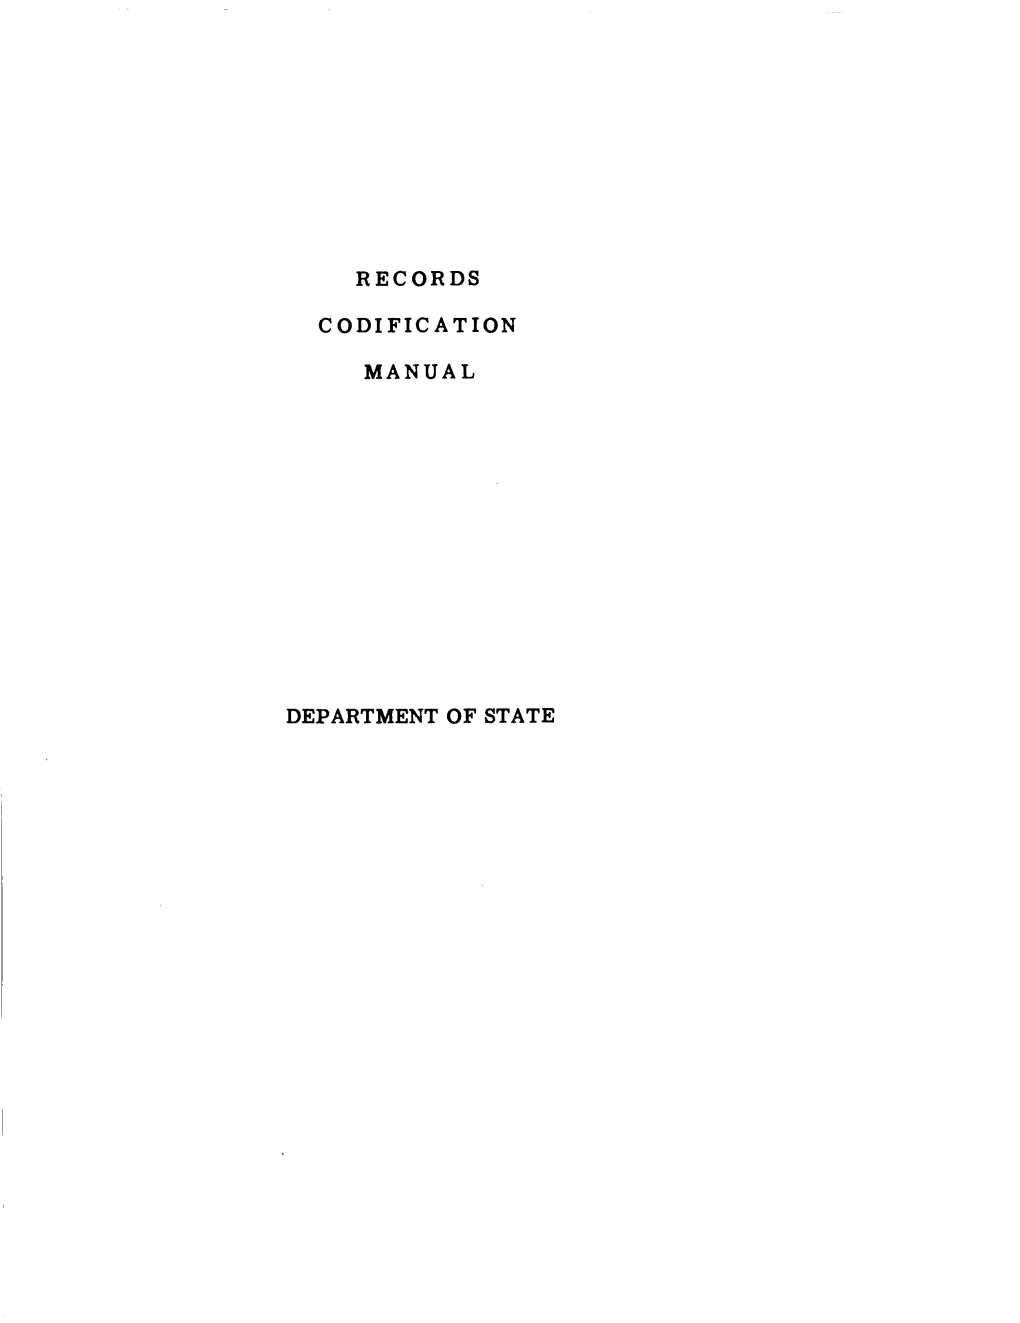 Decimal File Filing Manual: 1960-January 1963